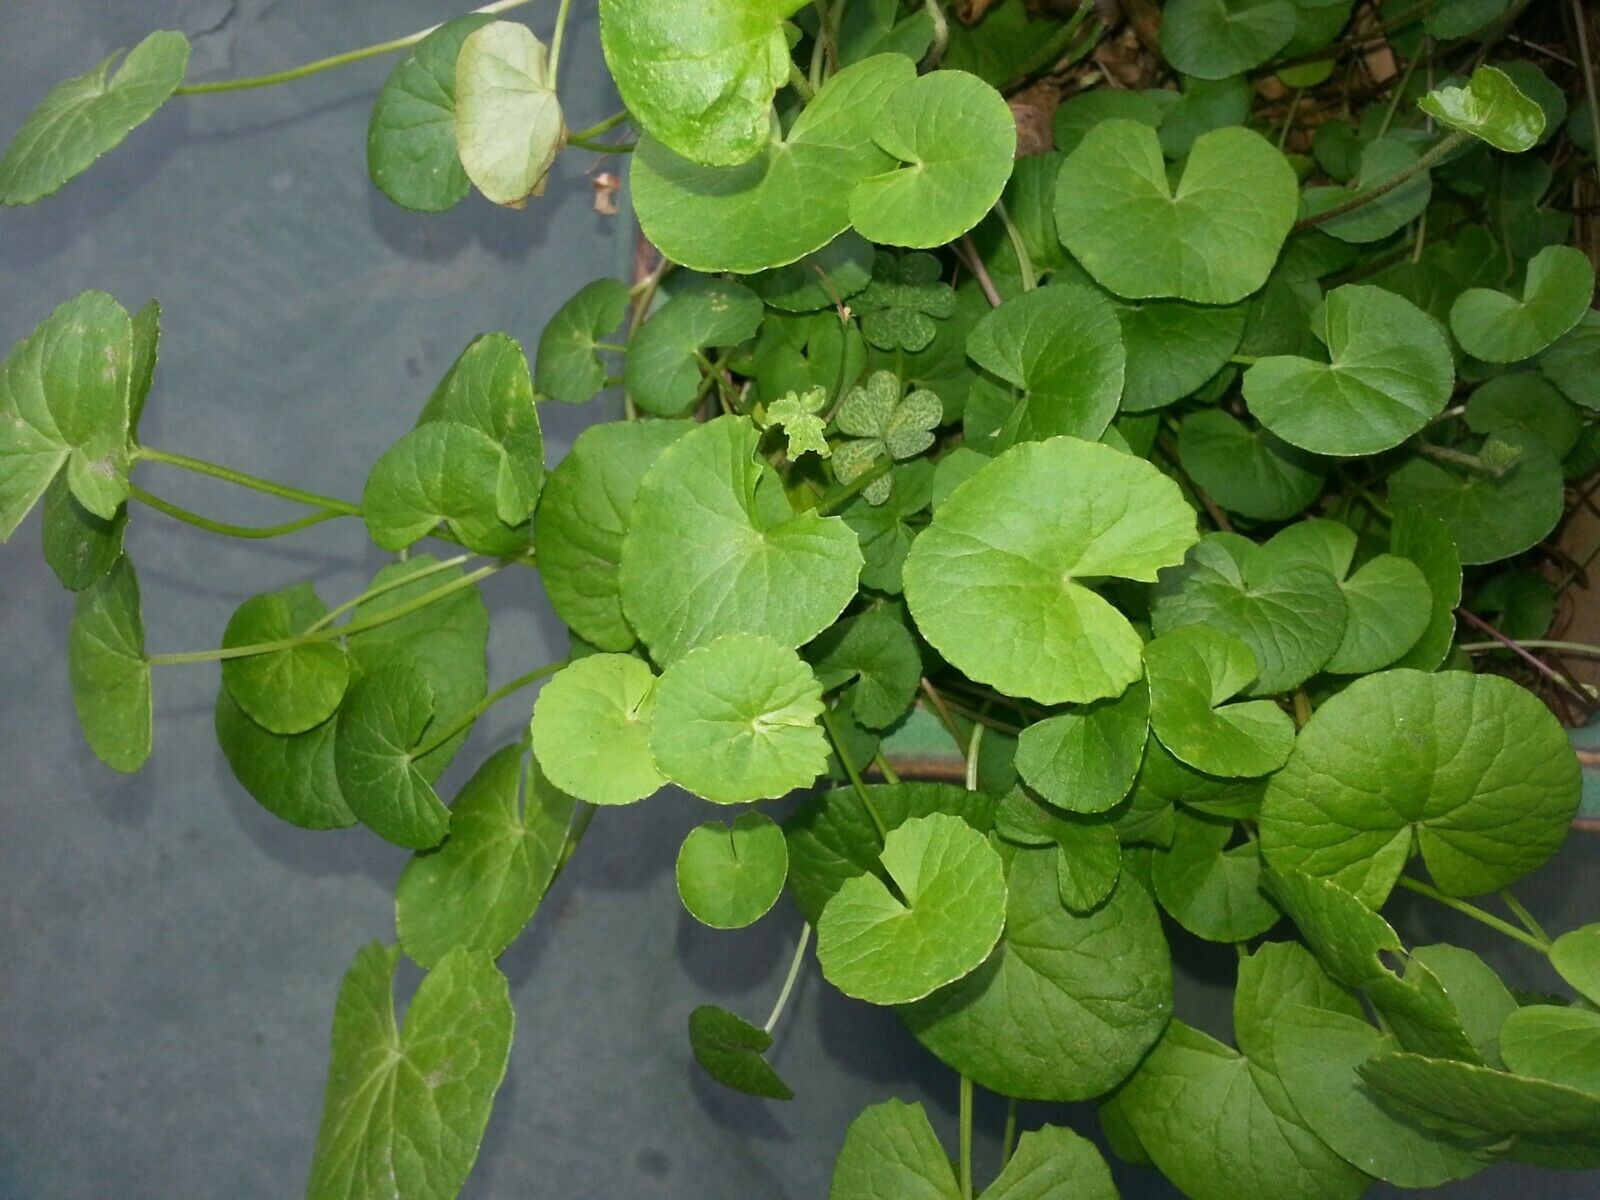 عکس گیاه گوتوکولا (gotukola)